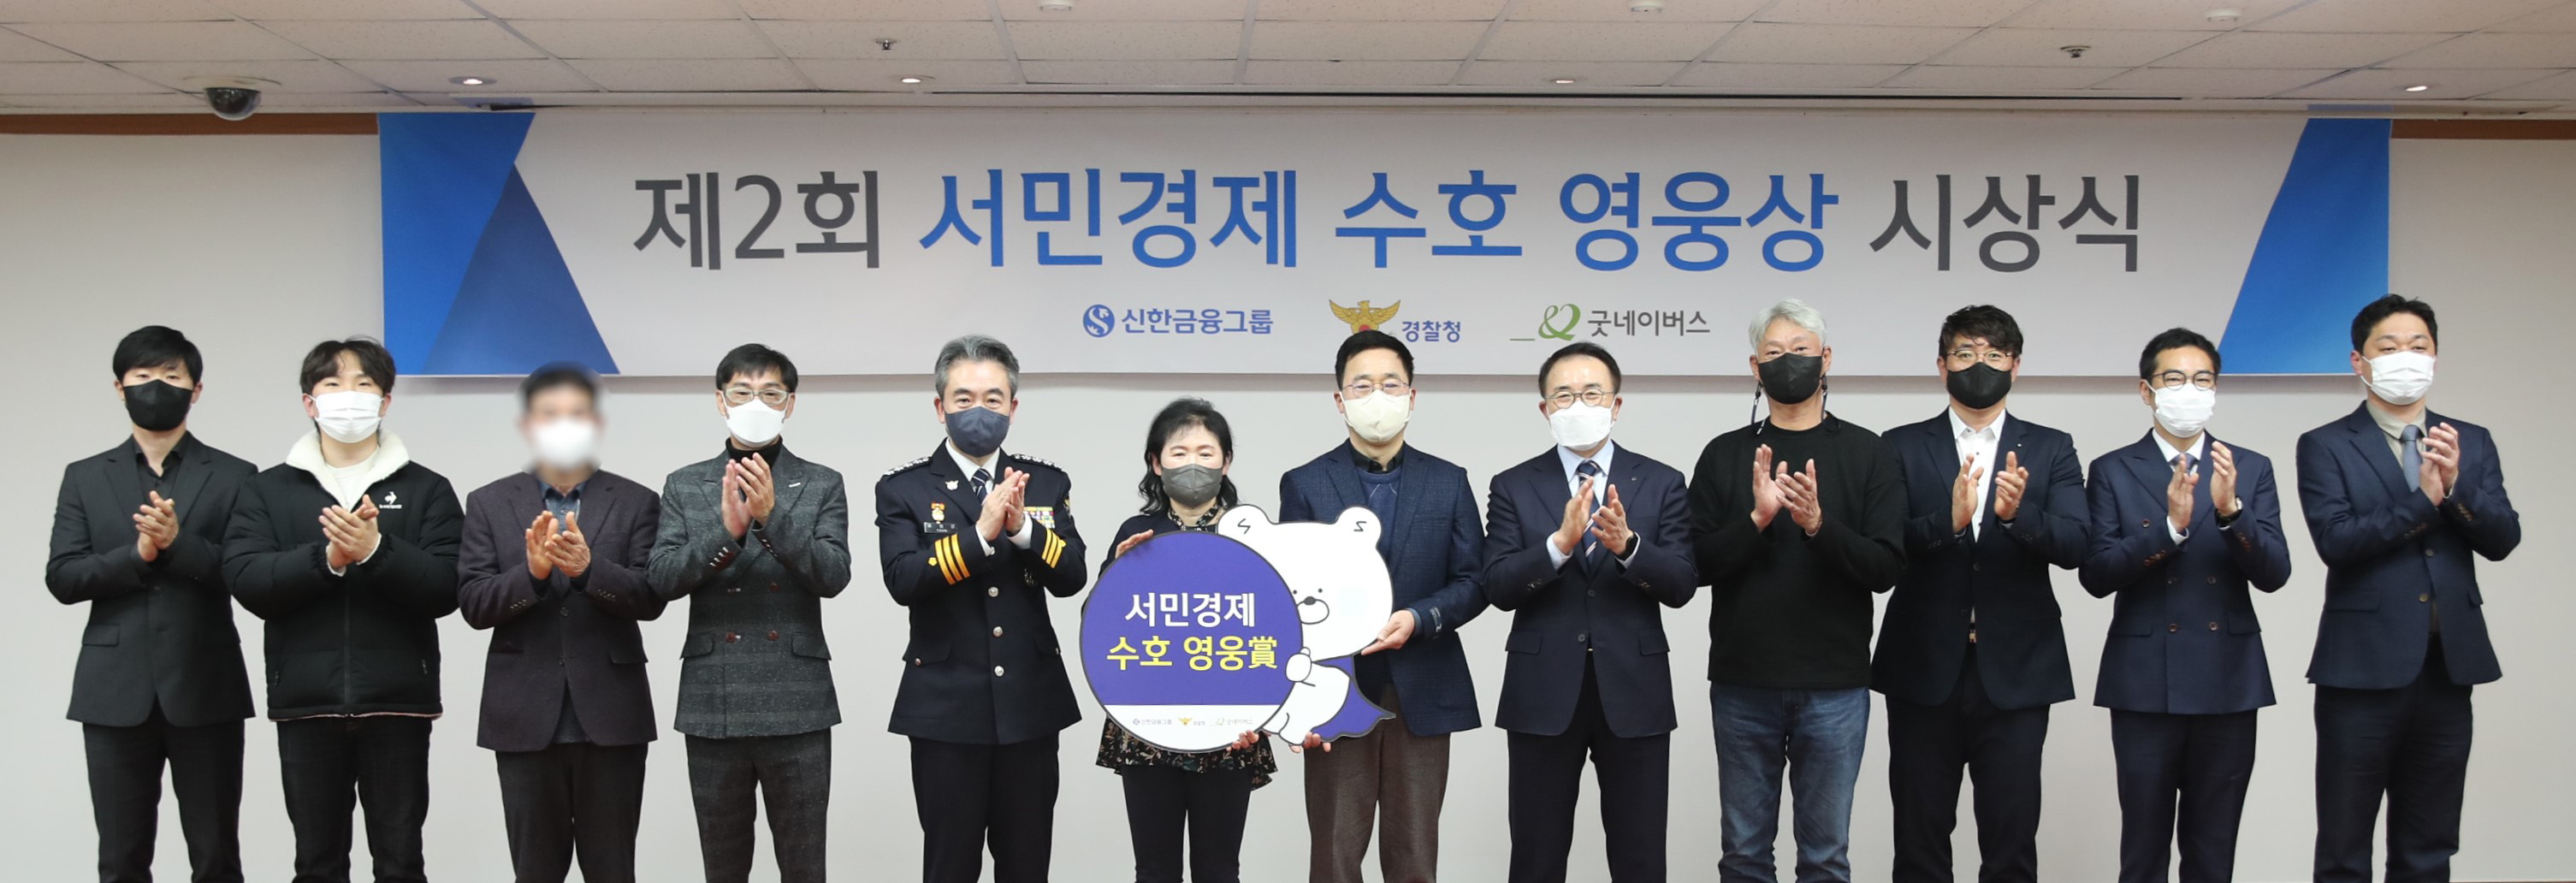 경찰청은 지난 9일 서울 서대문구 경찰청 청사에서 열린 제2회 서민경제 수호 영웅상’ 시상식에서 수상자들이 박수를 치고 있다. 경찰청 제공